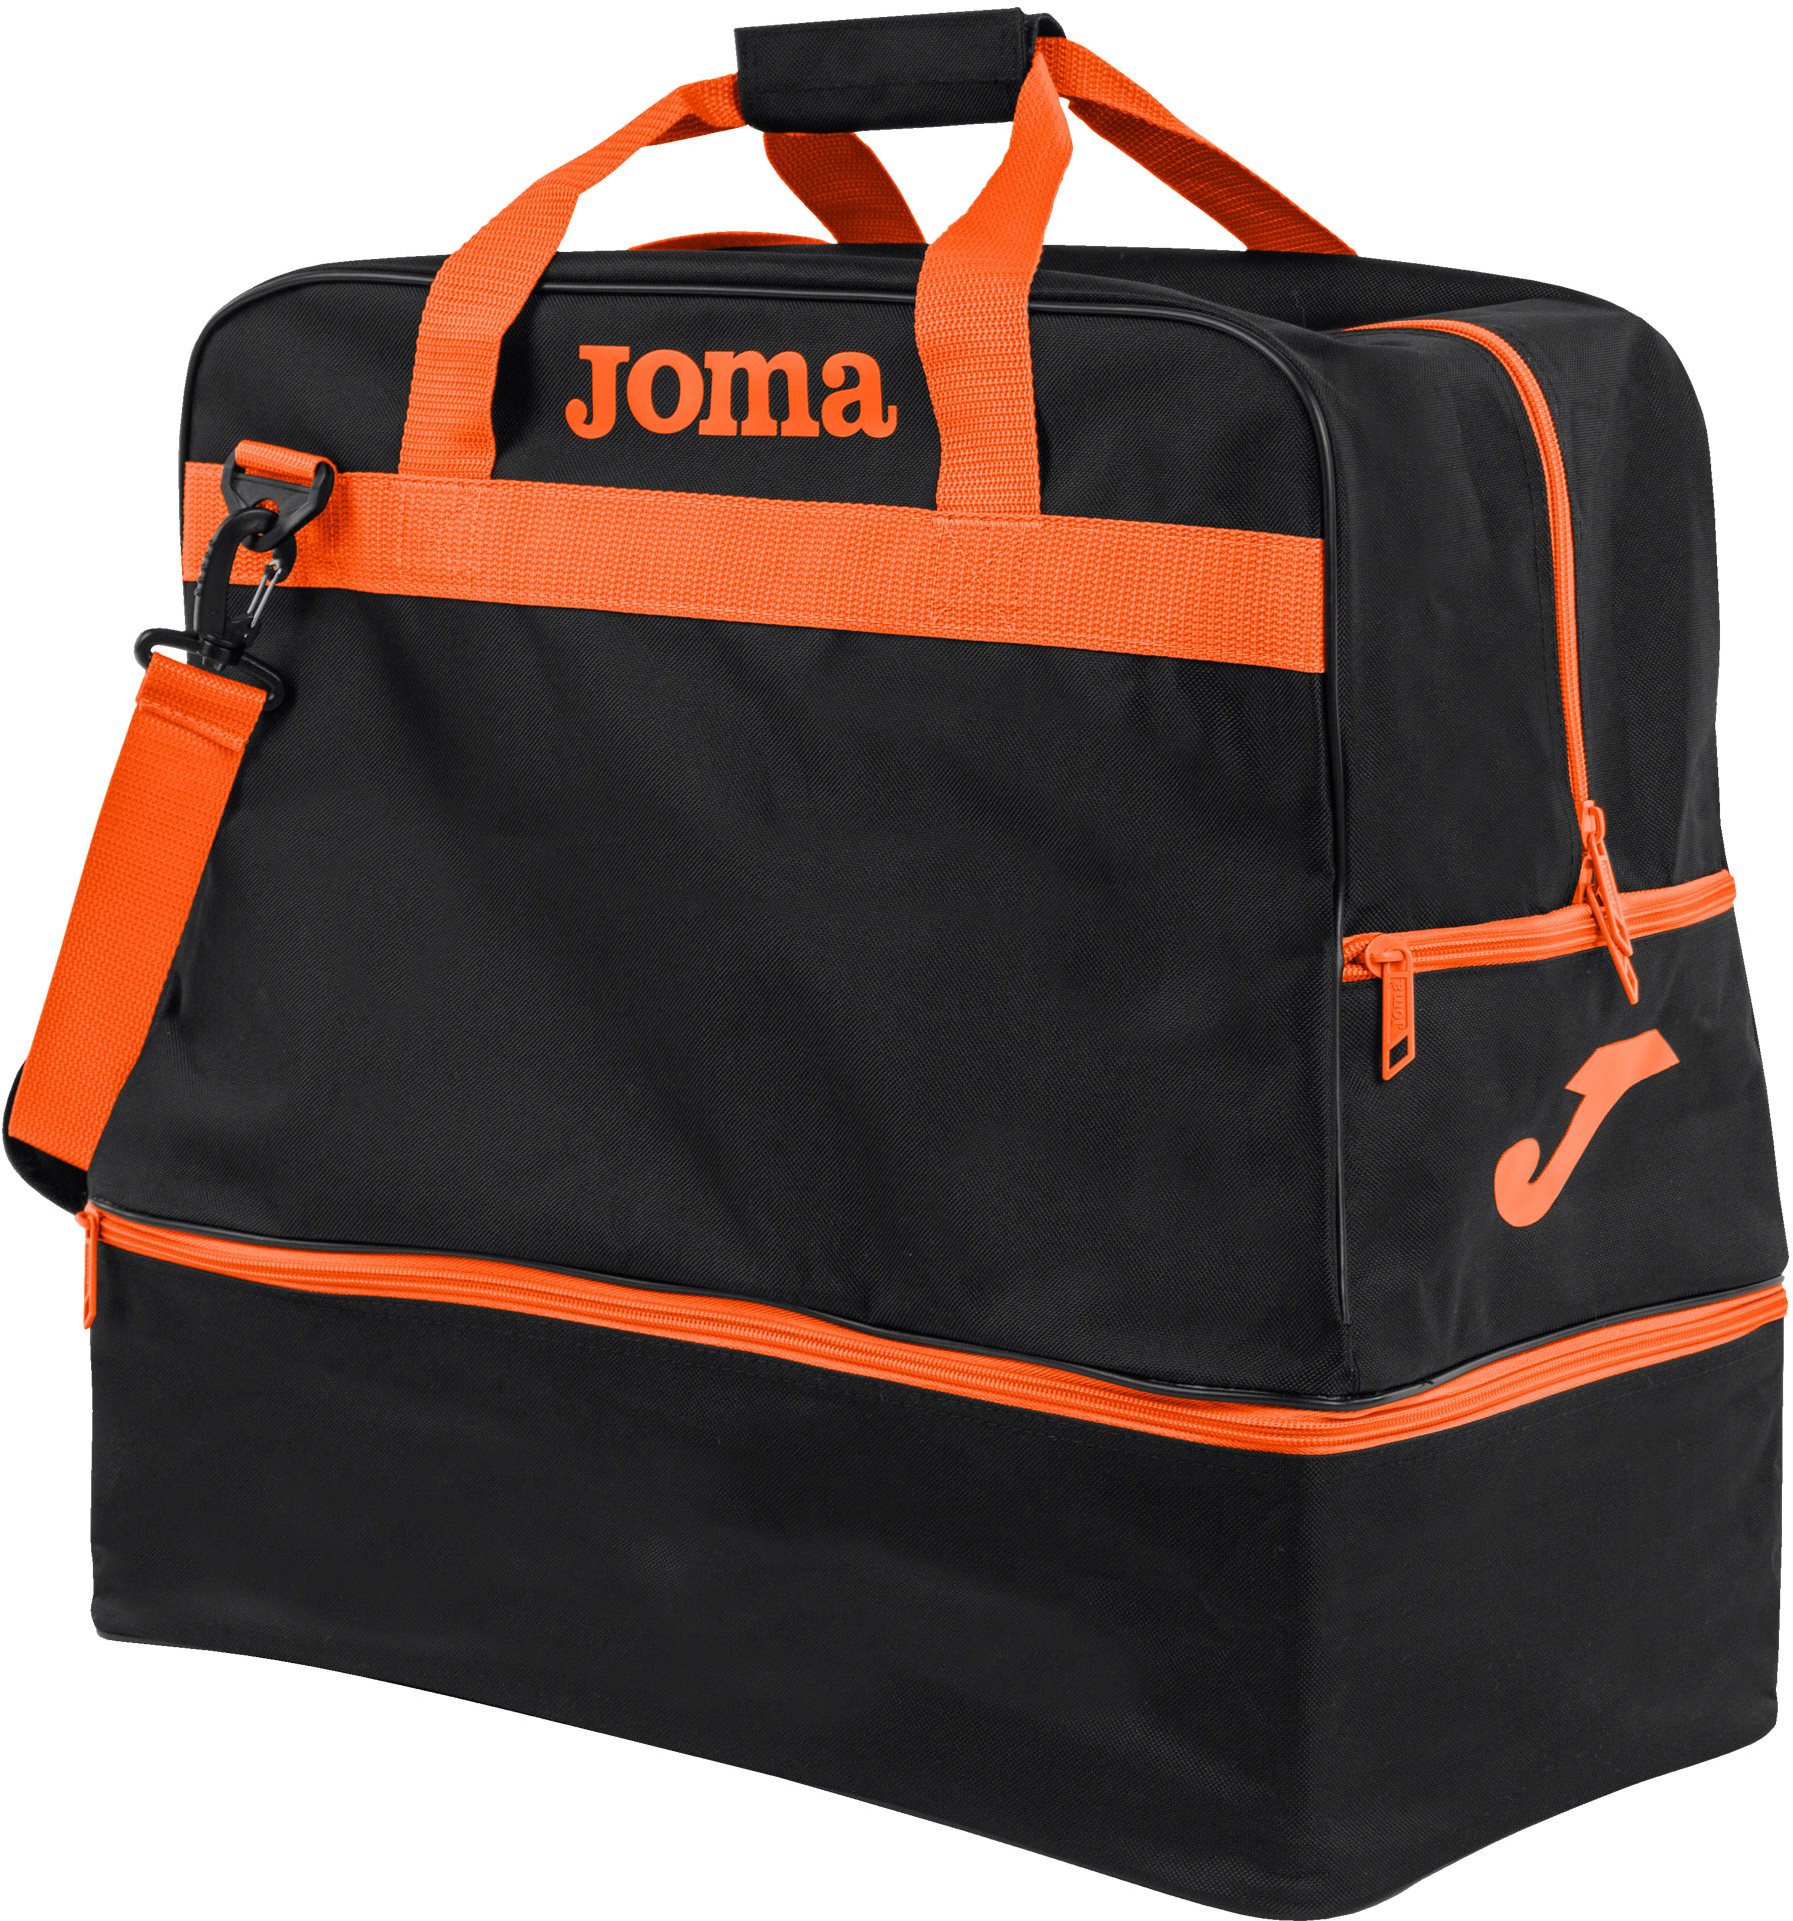 Joma Trainning III black - orange - L